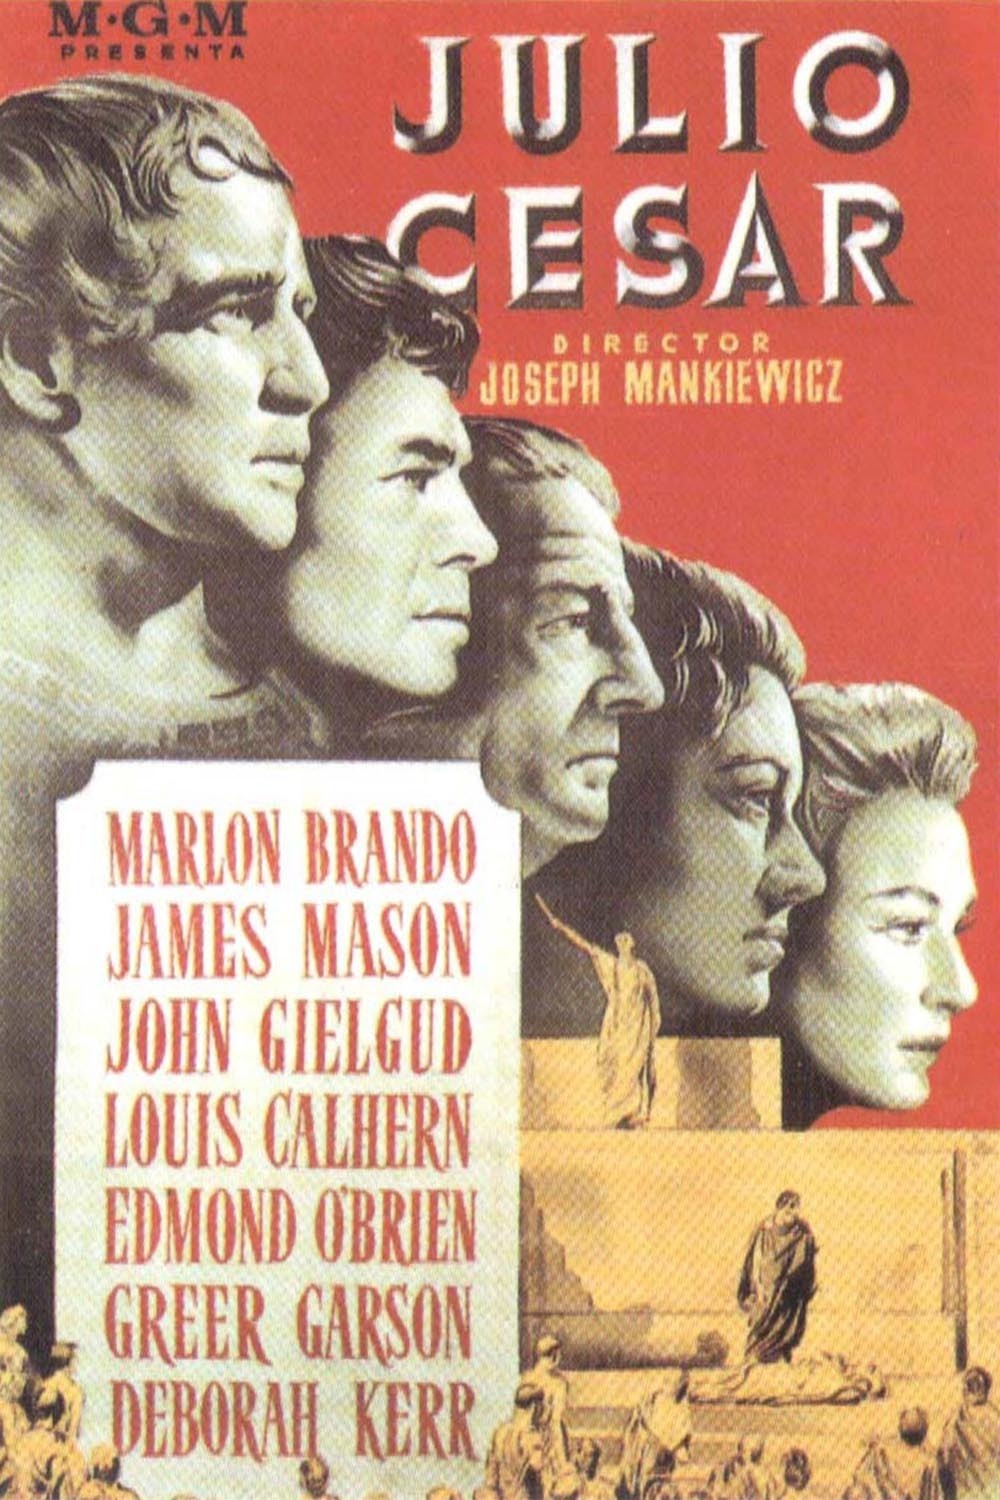 凱撒大帝(1953年約瑟夫·L·曼凱維奇執導的美國電影)